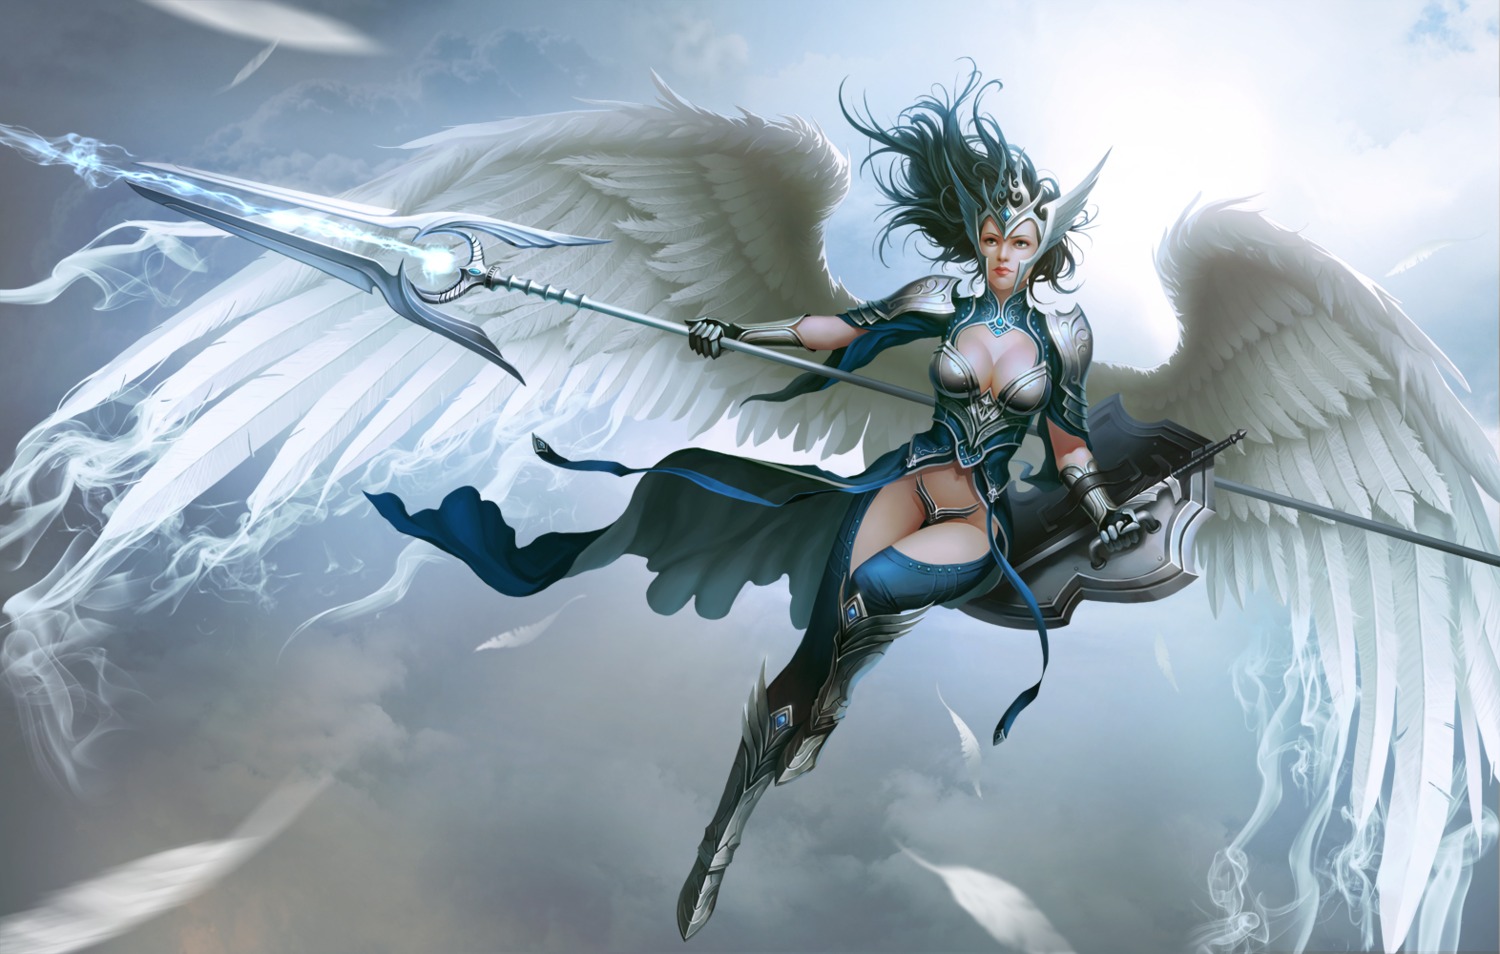 armor cleavage heels ssamja sword thighhighs weapon wings